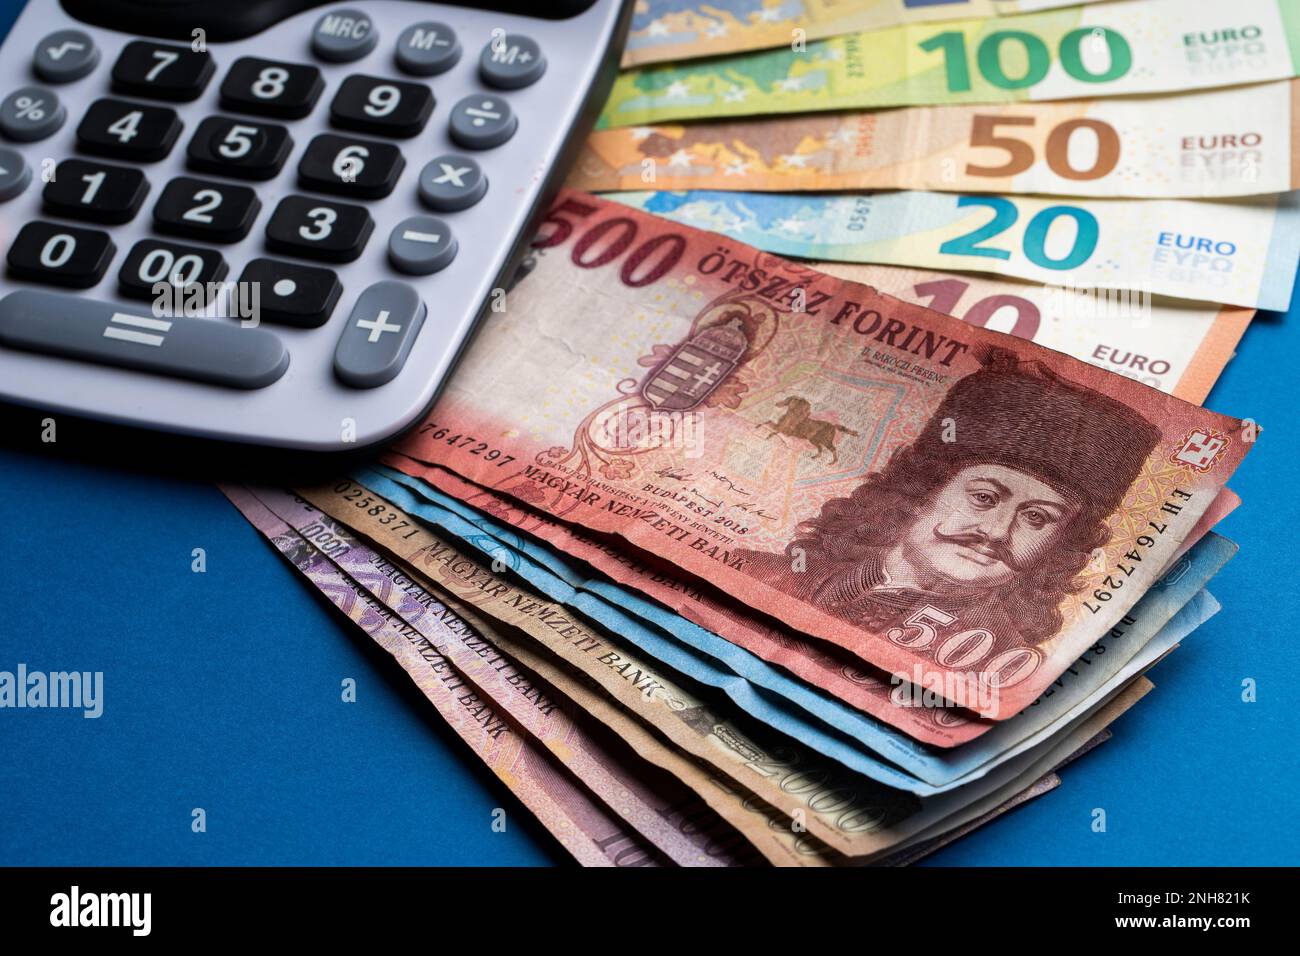 Il y a des forints hongrois et des billets en euros sur une surface plane.  À côté se trouve une calculatrice sur une table bleue. Taux de change HUF  EUR Photo Stock -